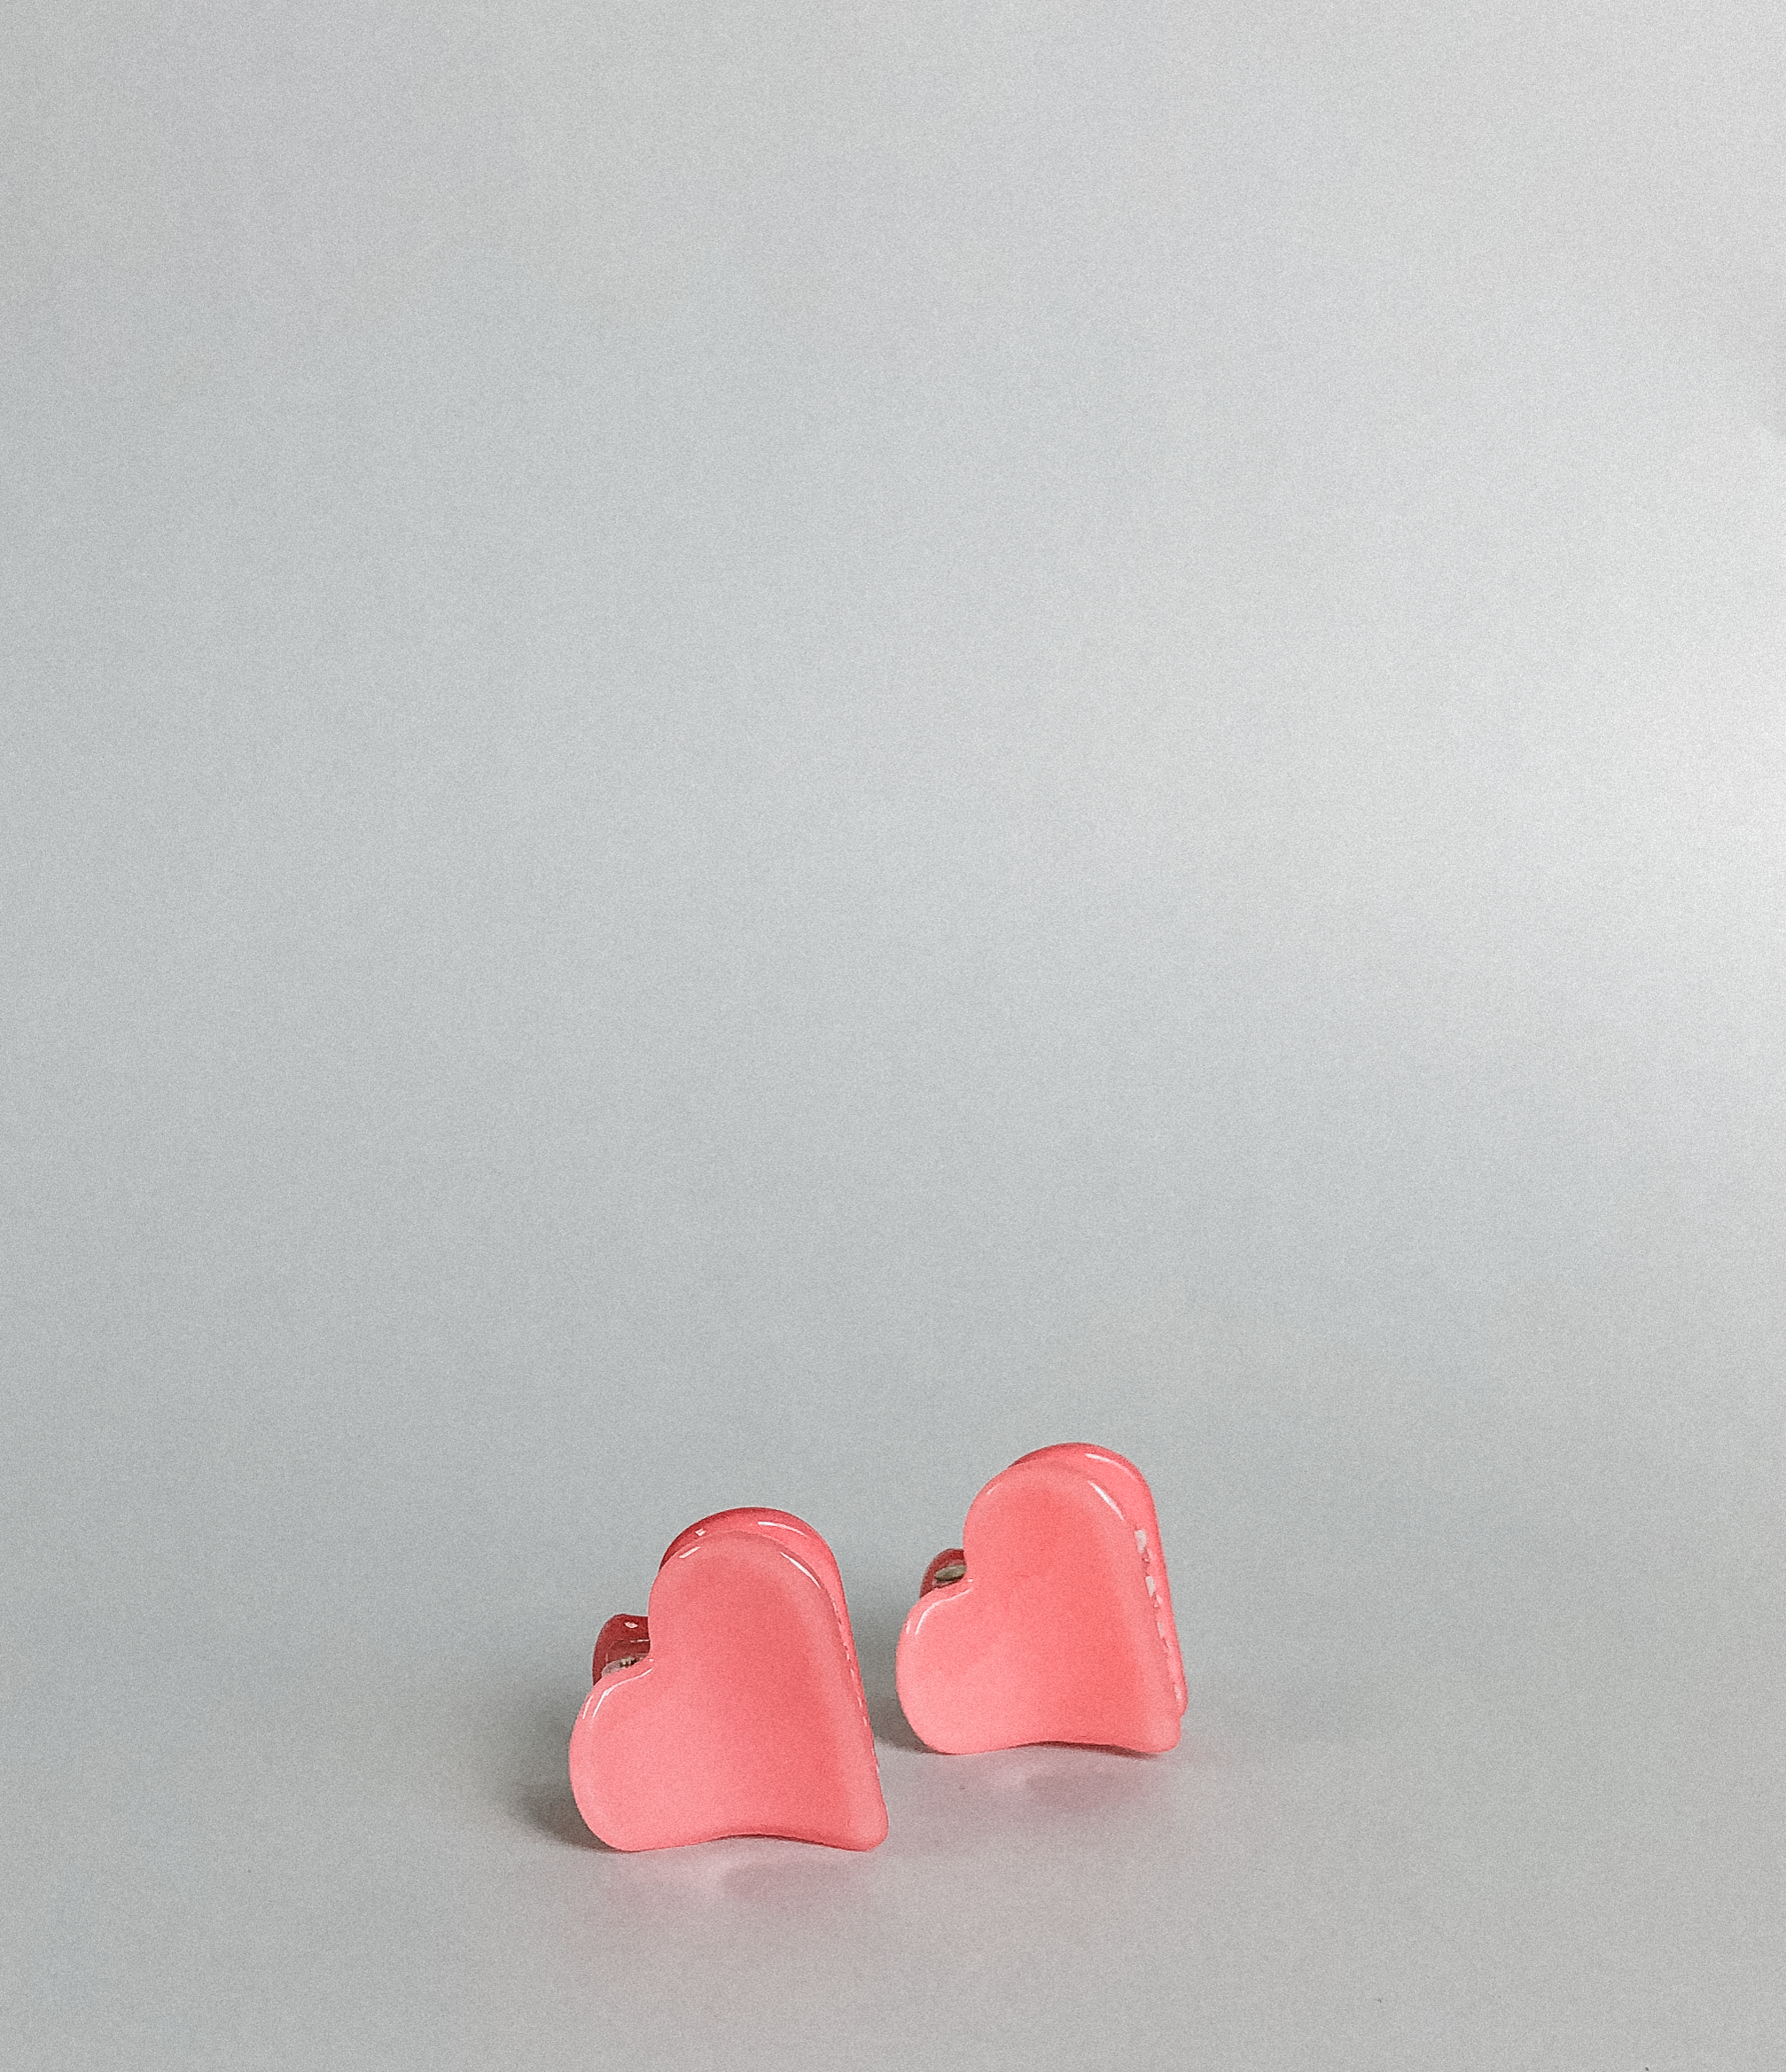 Cielito Mini Hearts by Veronique